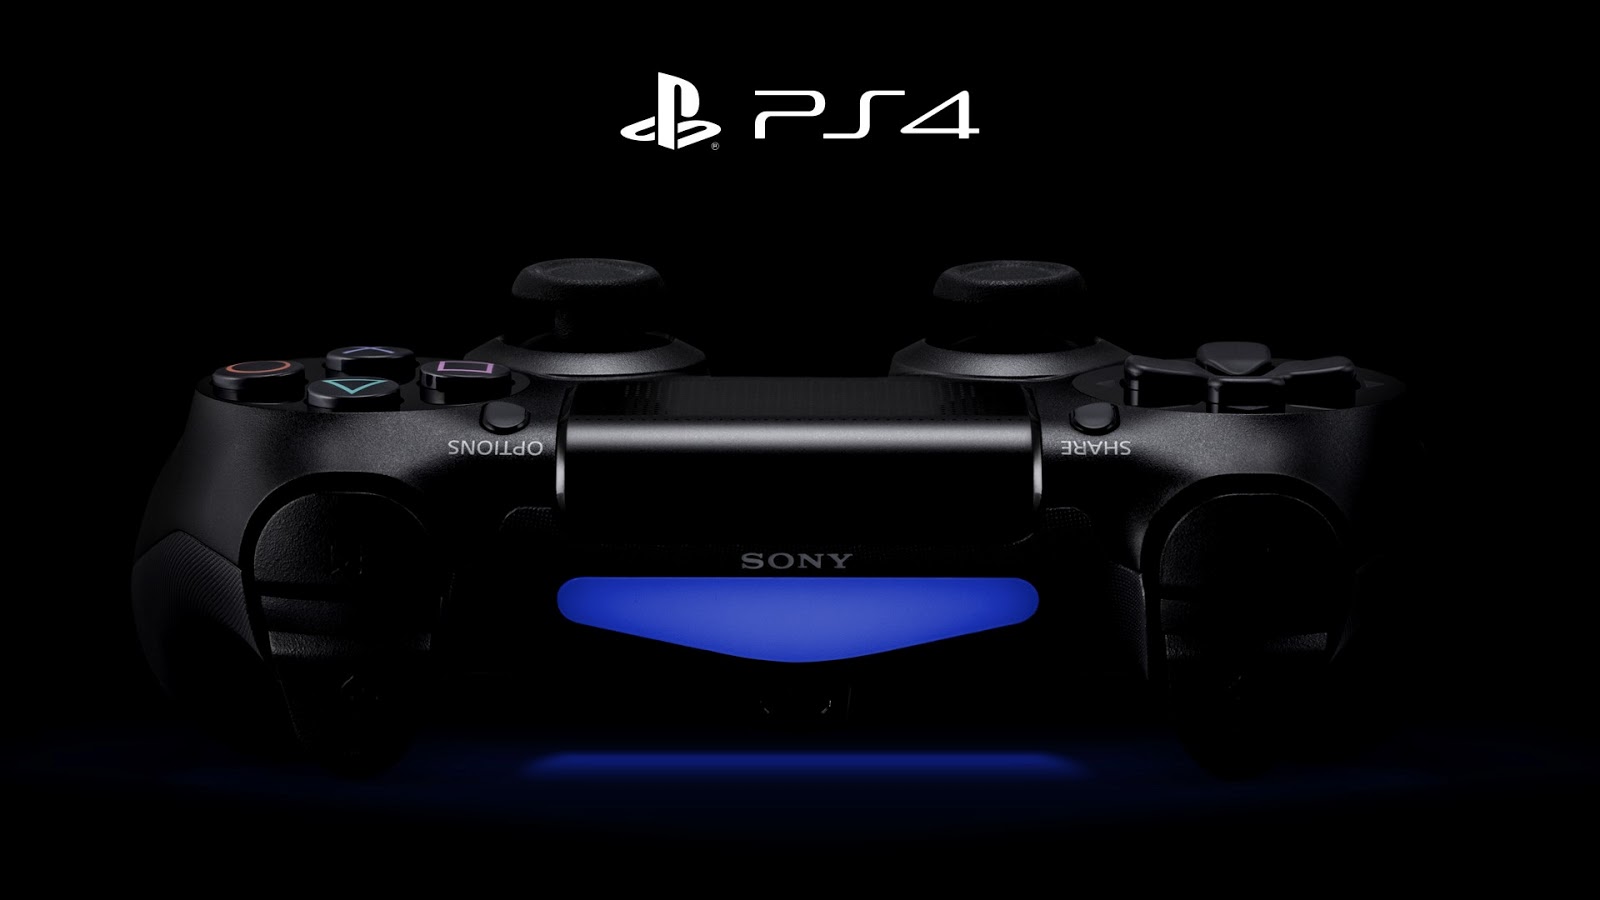 Sony đang khai tử hệ máy chơi game PS4 dần